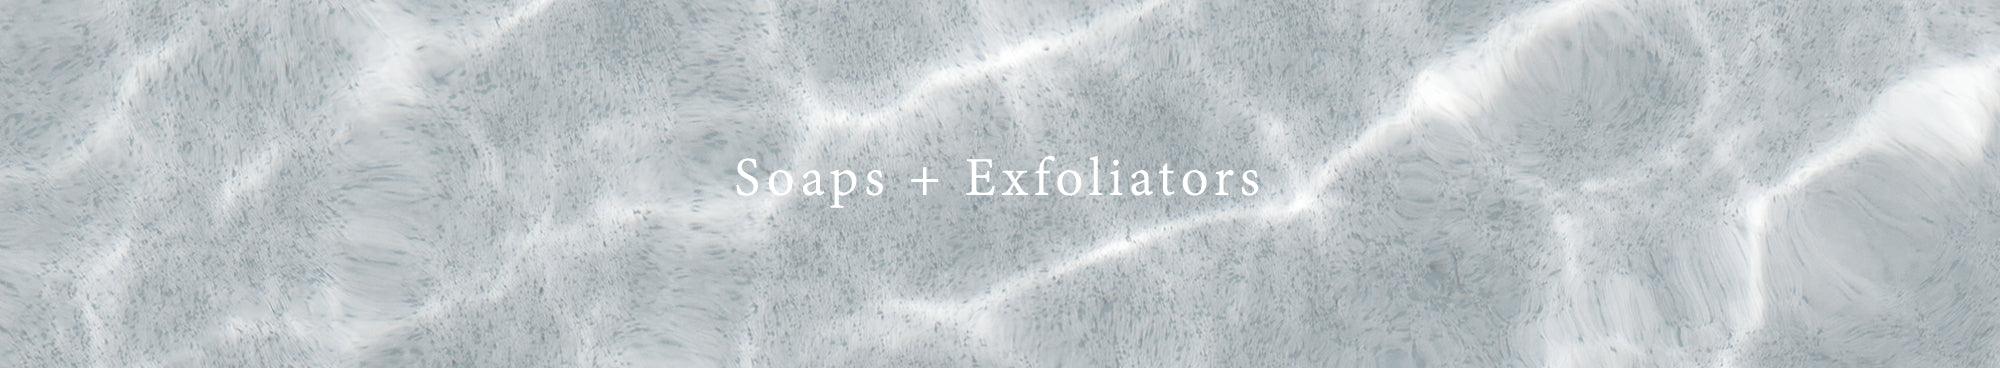 Soaps + Exfoliators - Rikumo